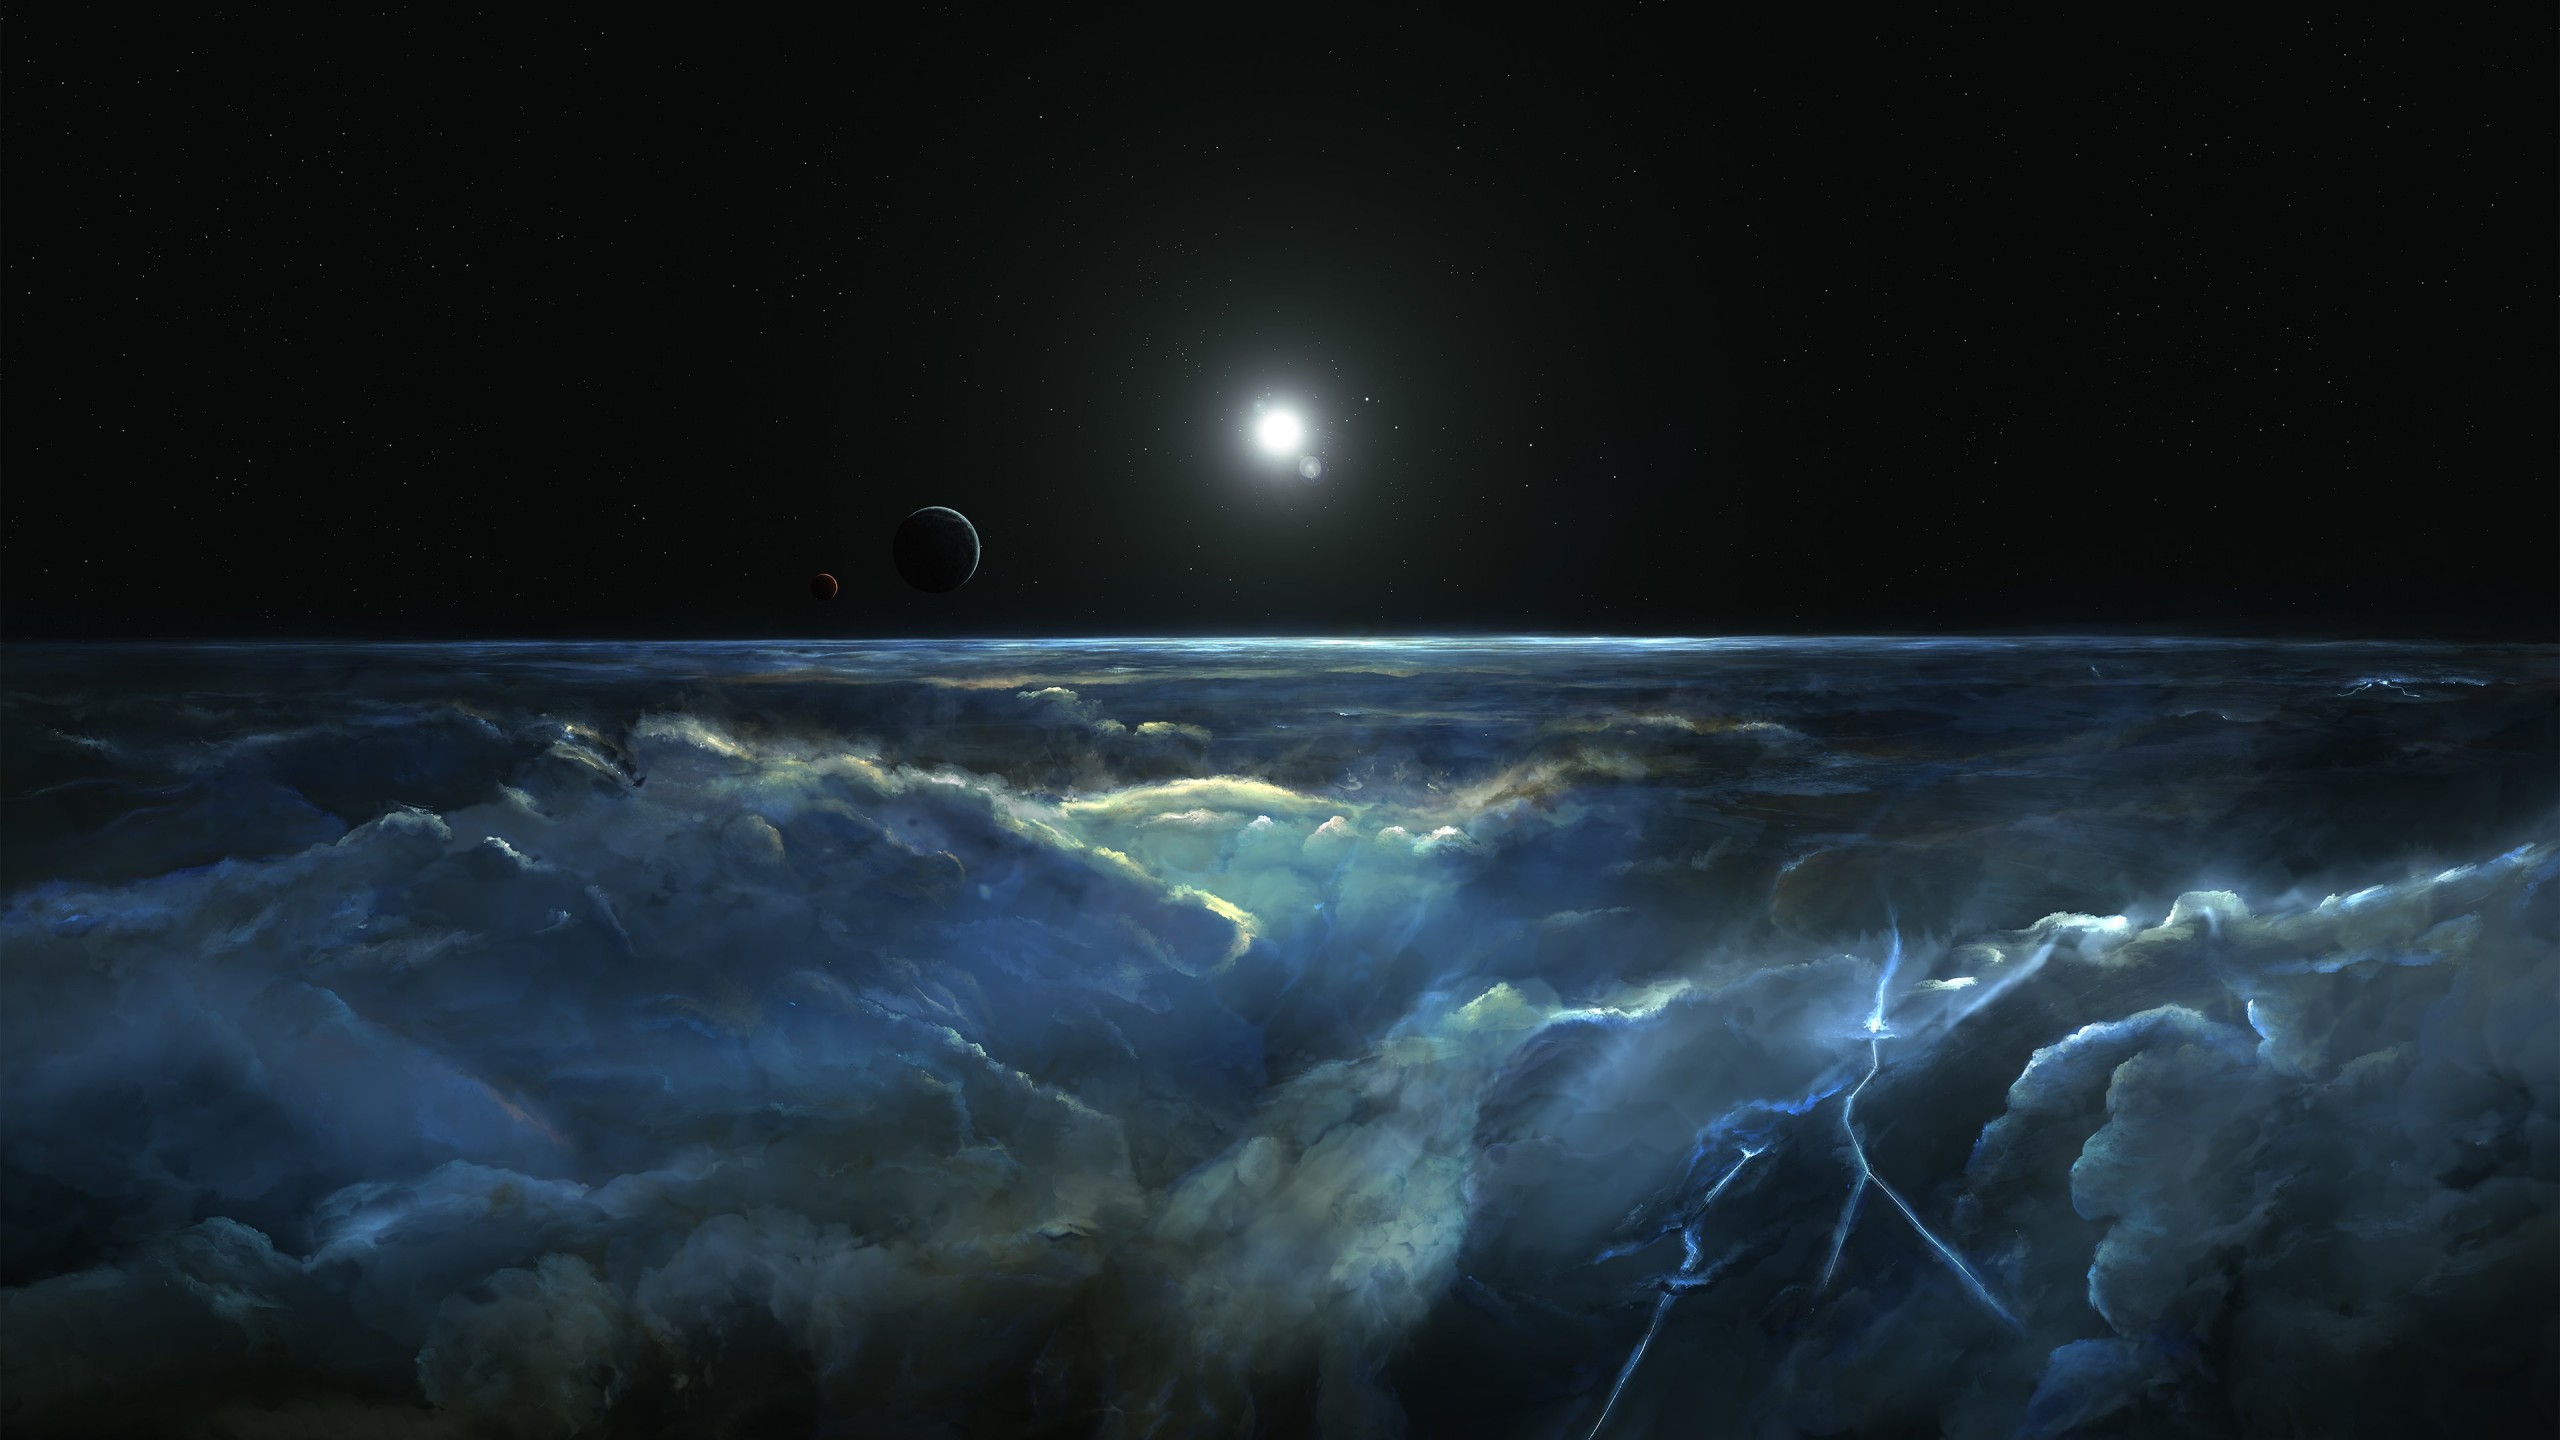 Stormy Atmosphere of Merphlyn Wallpaper for Desktop 2560x1440